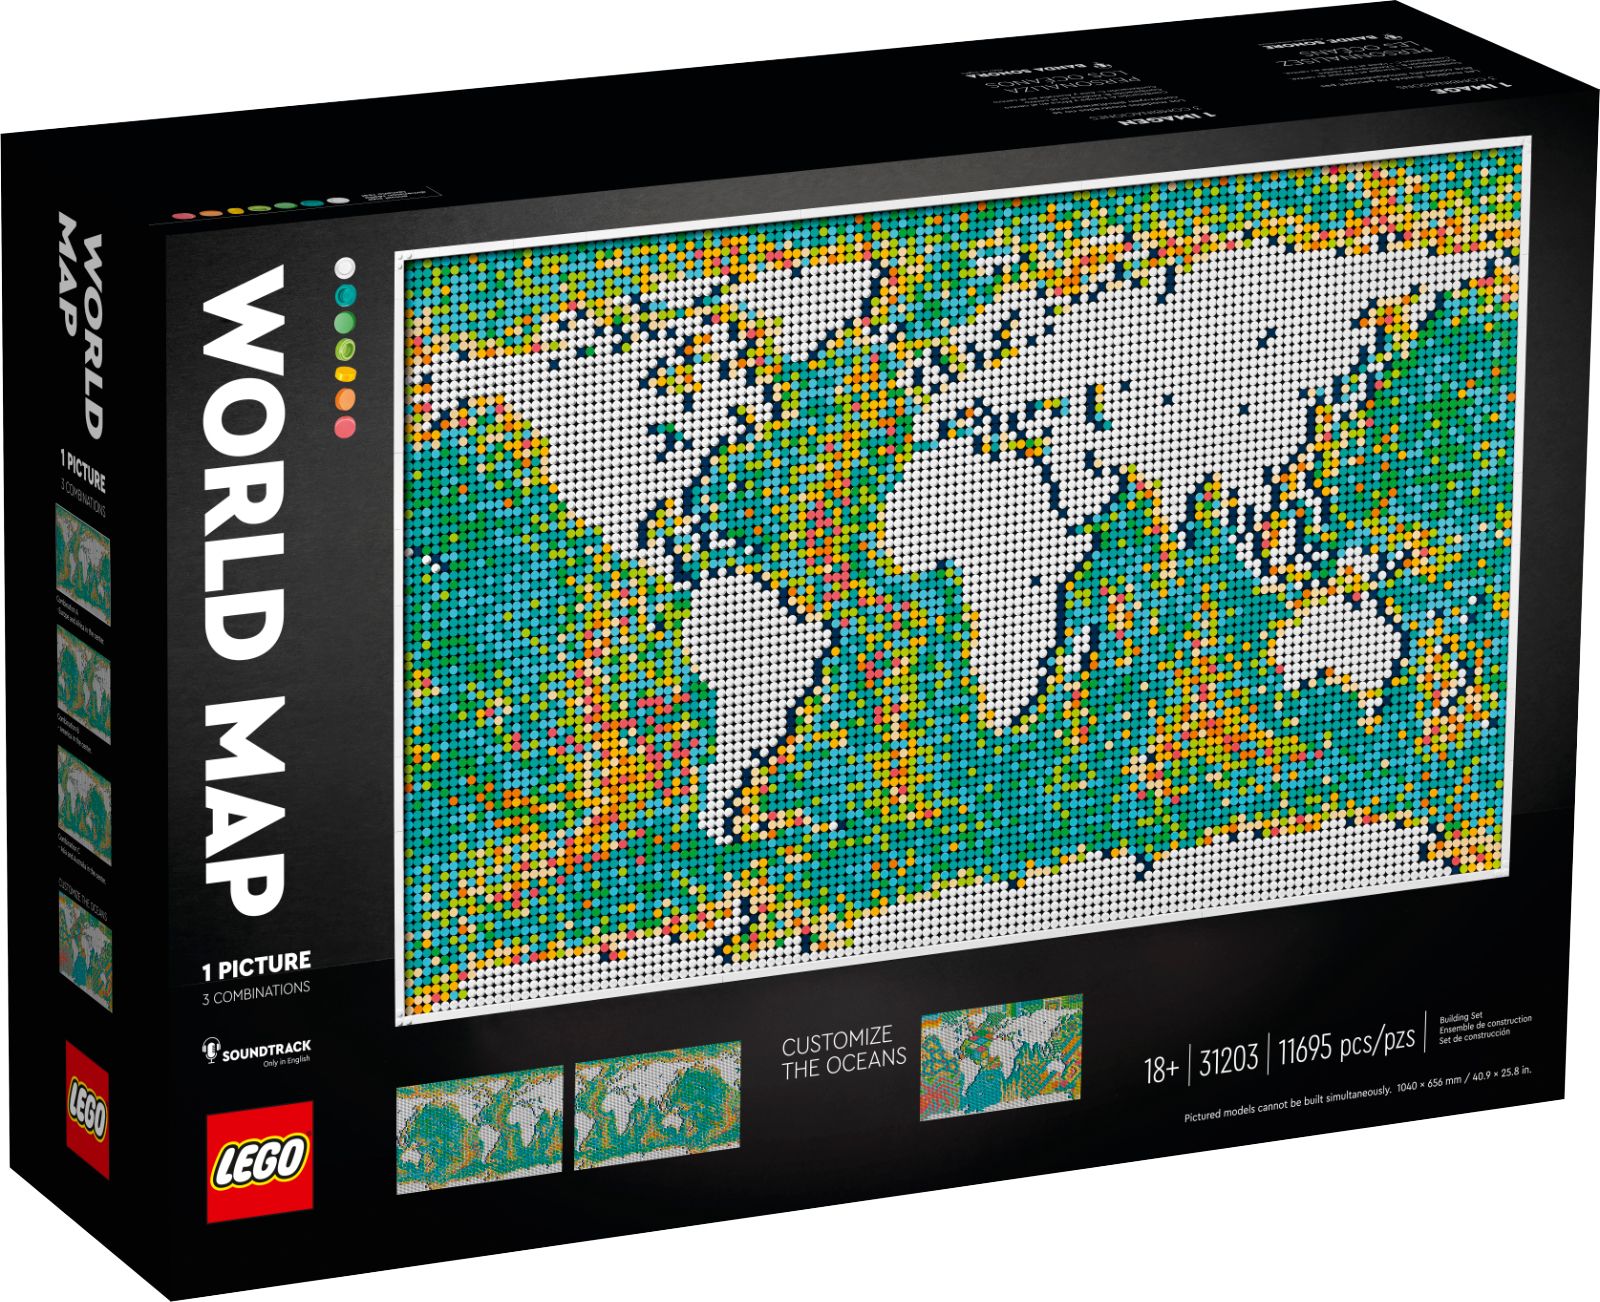 Lego announces its biggest set ever - it's a map photo 1